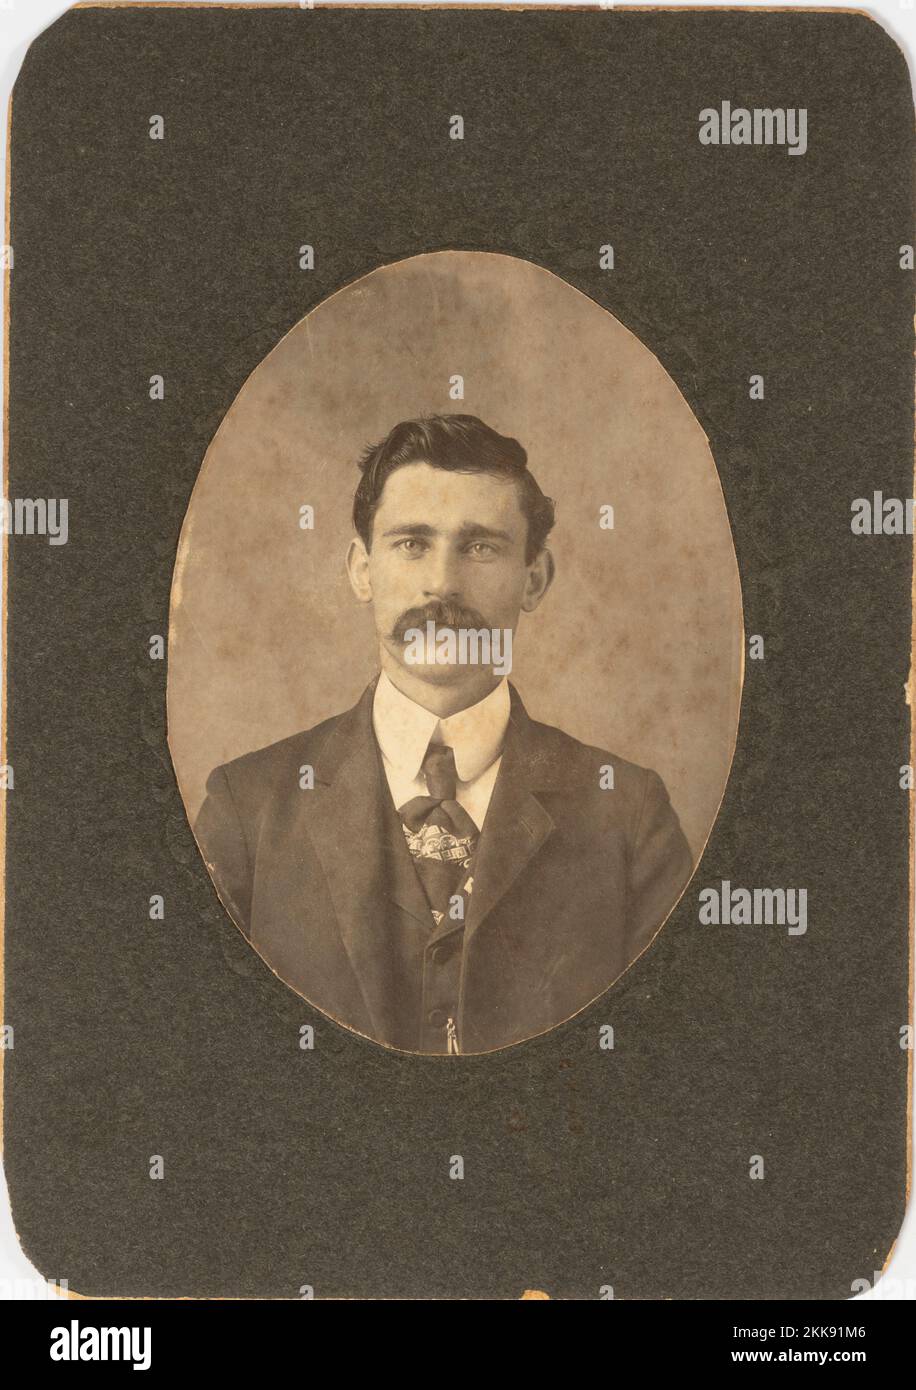 El último abuelo del fotógrafo con un bigote grande alrededor de la vuelta del siglo 20th. Foto de stock